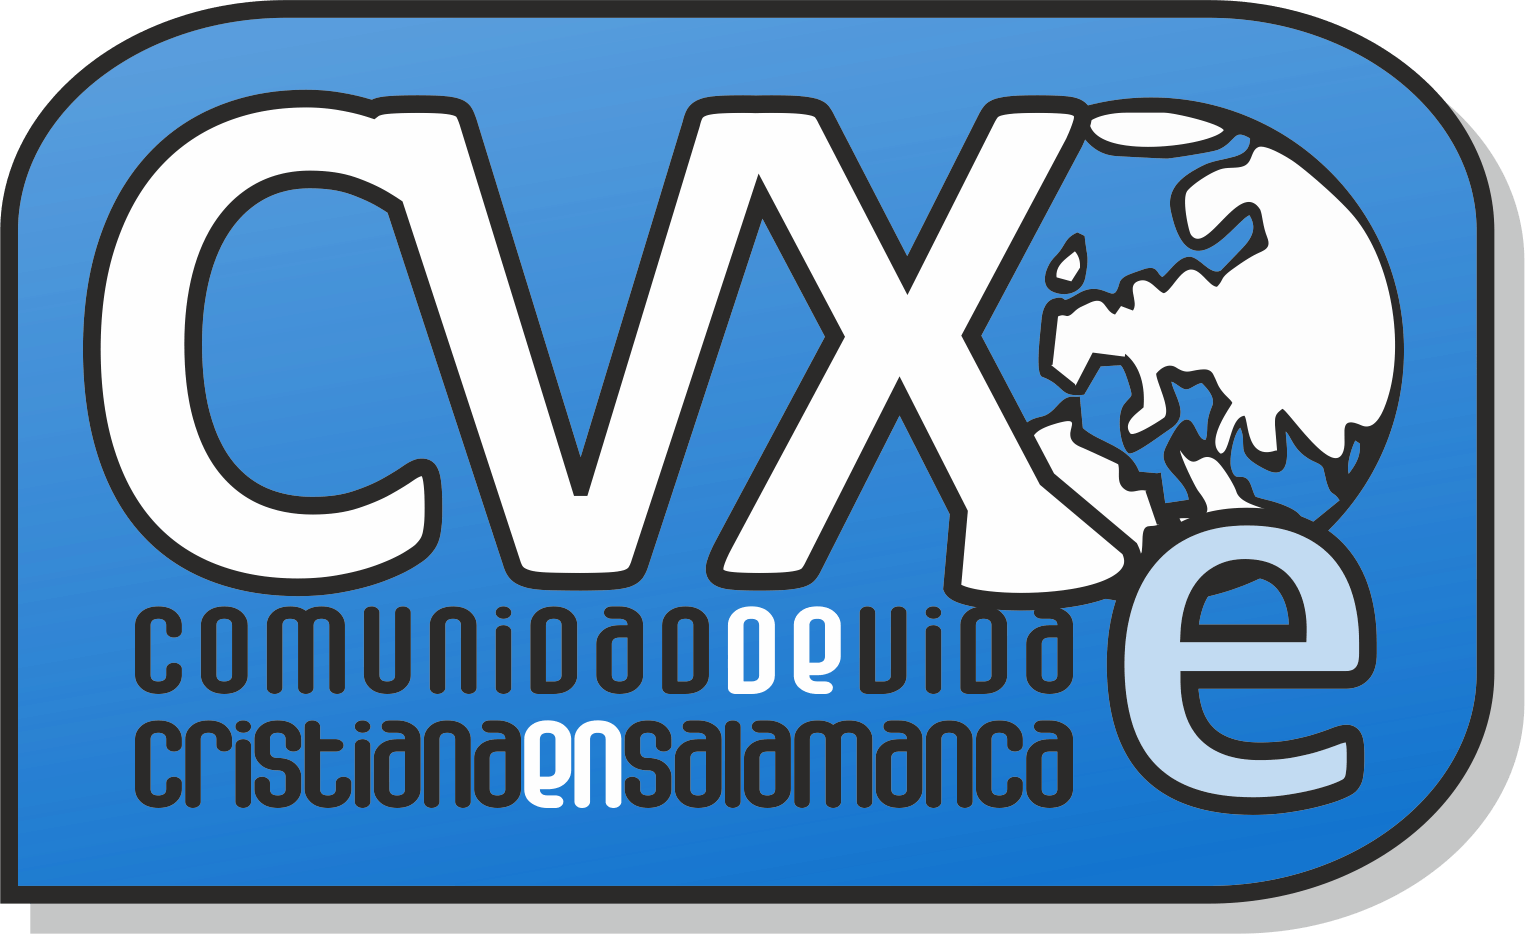 CVX Logo - NUEVO LOGO DE CVX EN SALAMANCA